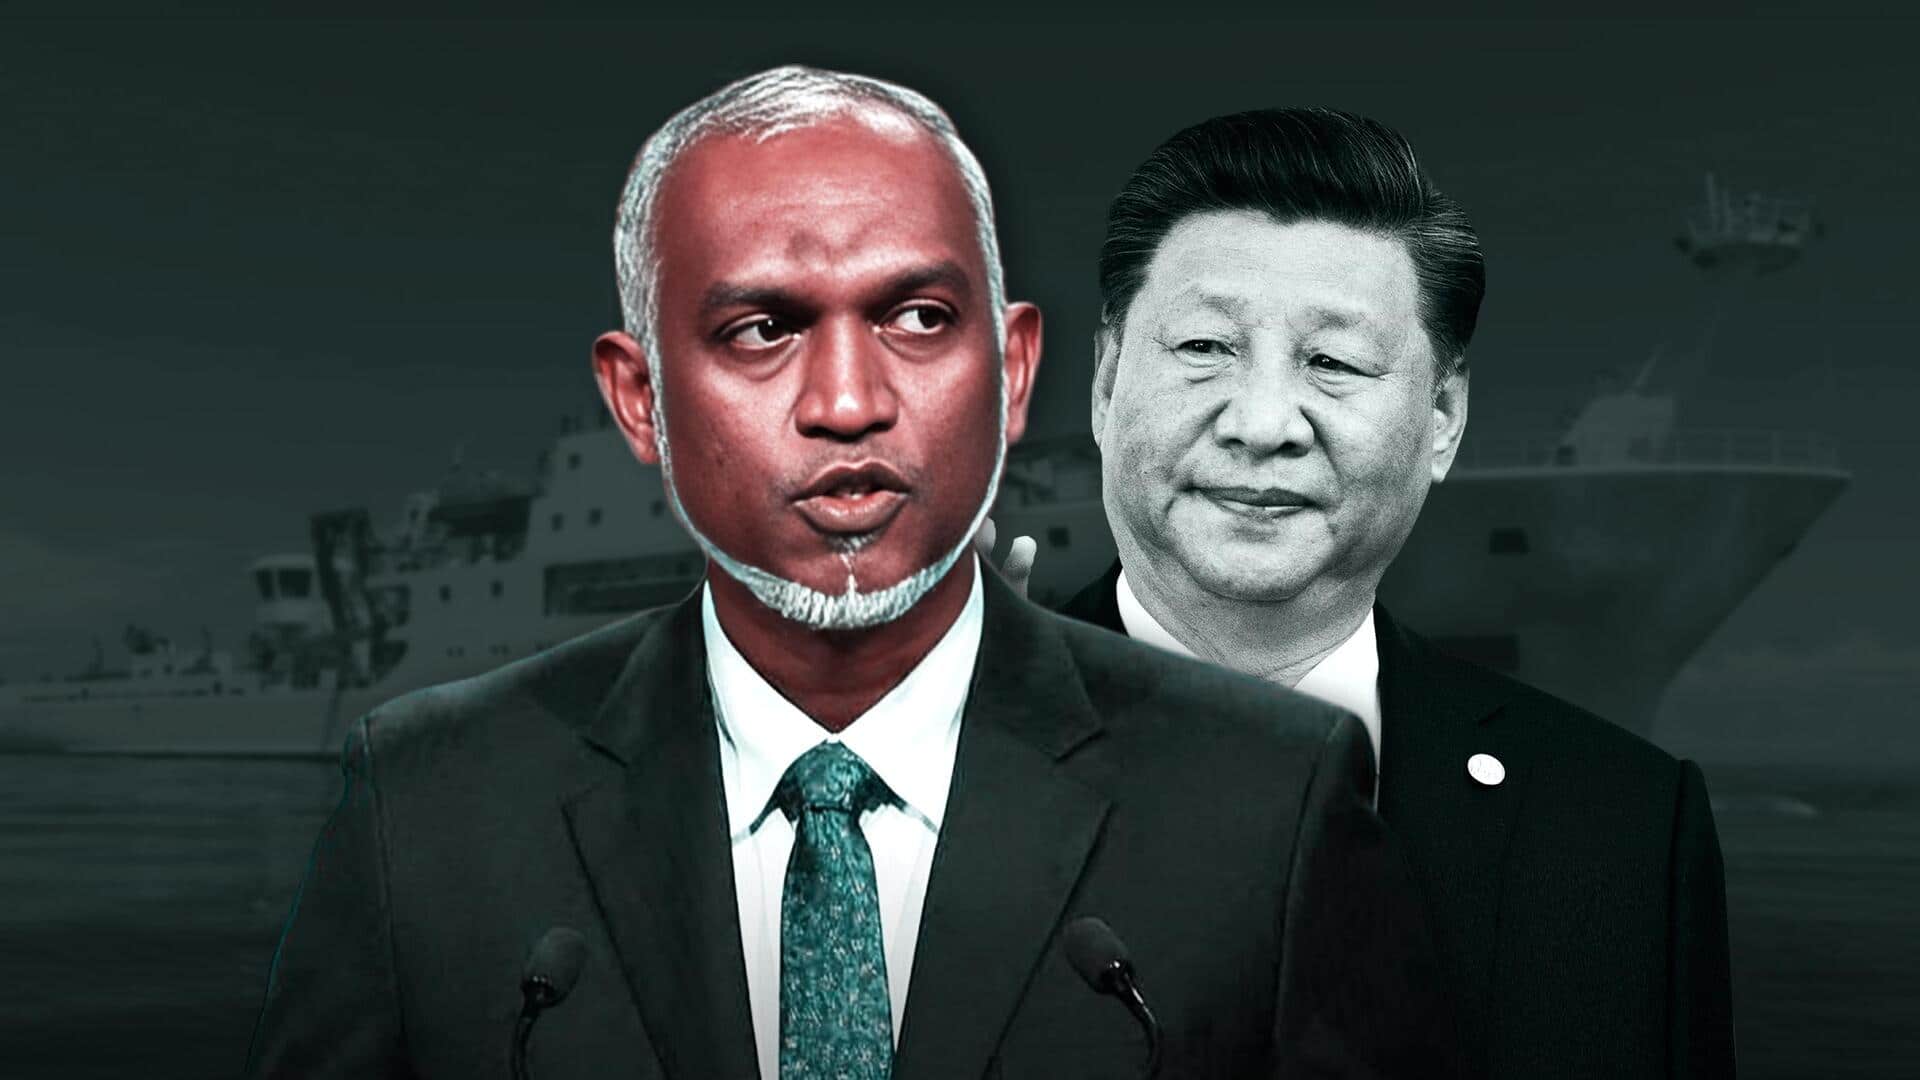 भारत से तनाव के बीच मालदीव पहुंचा चीन का 'अनुसंधान' जहाज, लगता है जासूसी का आरोप